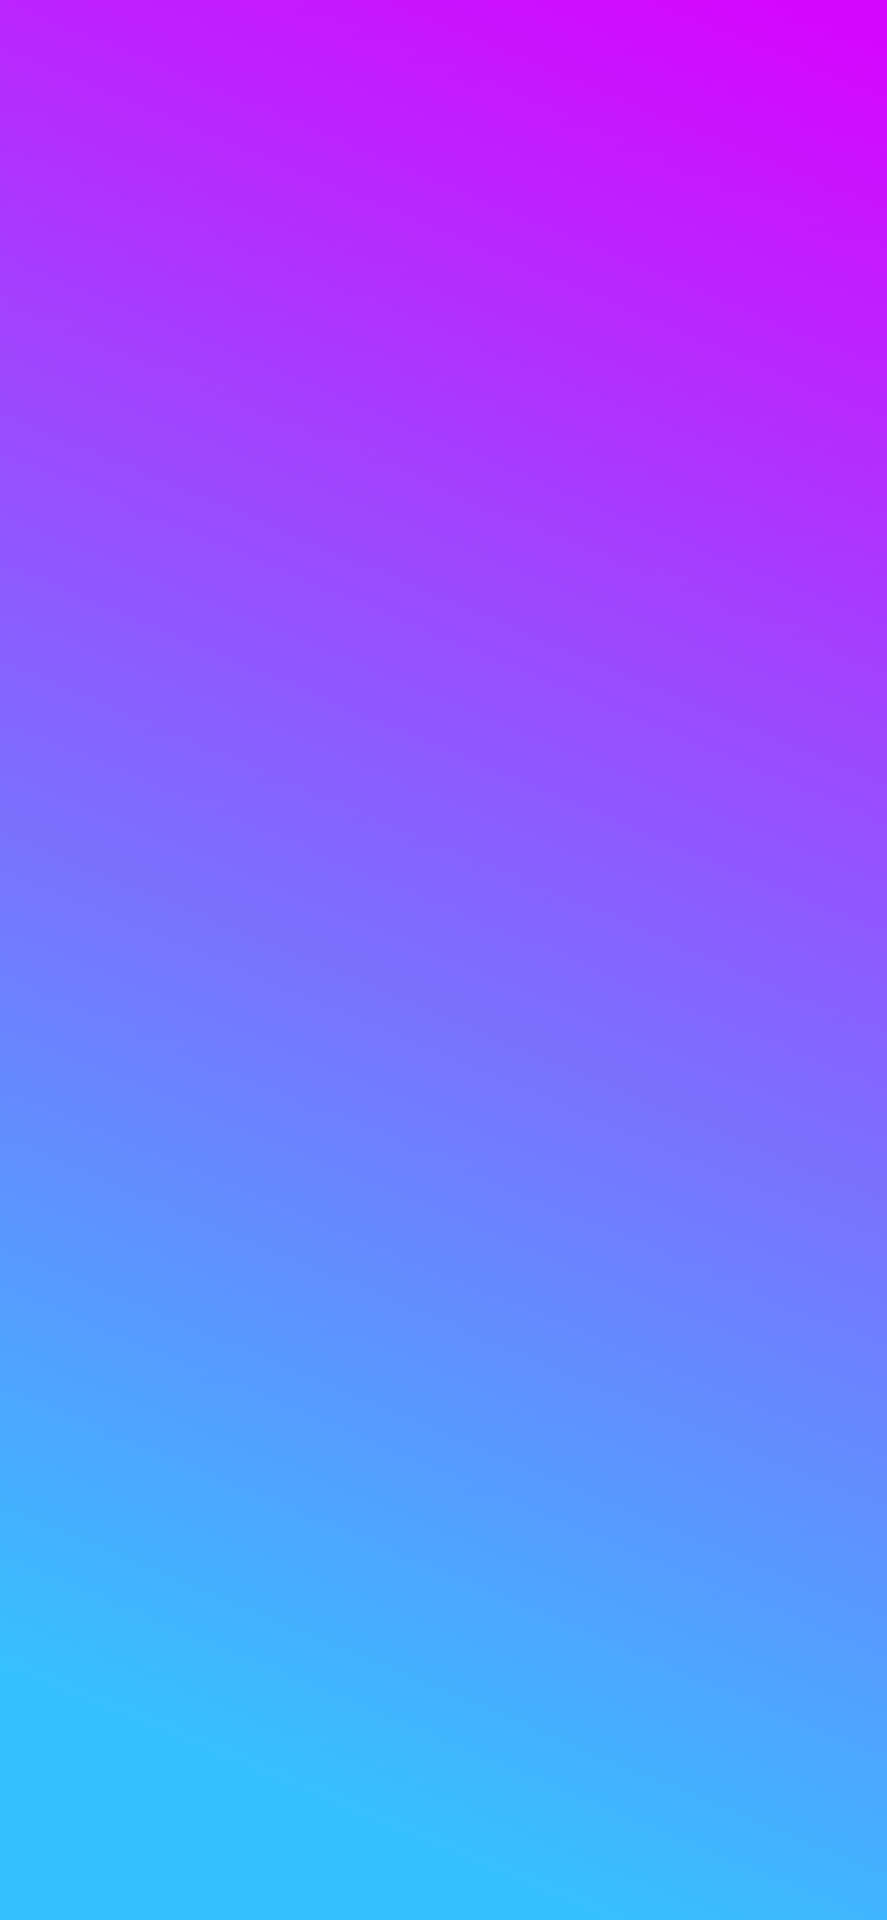 Portrait Sky Blue Purple Gradient Background